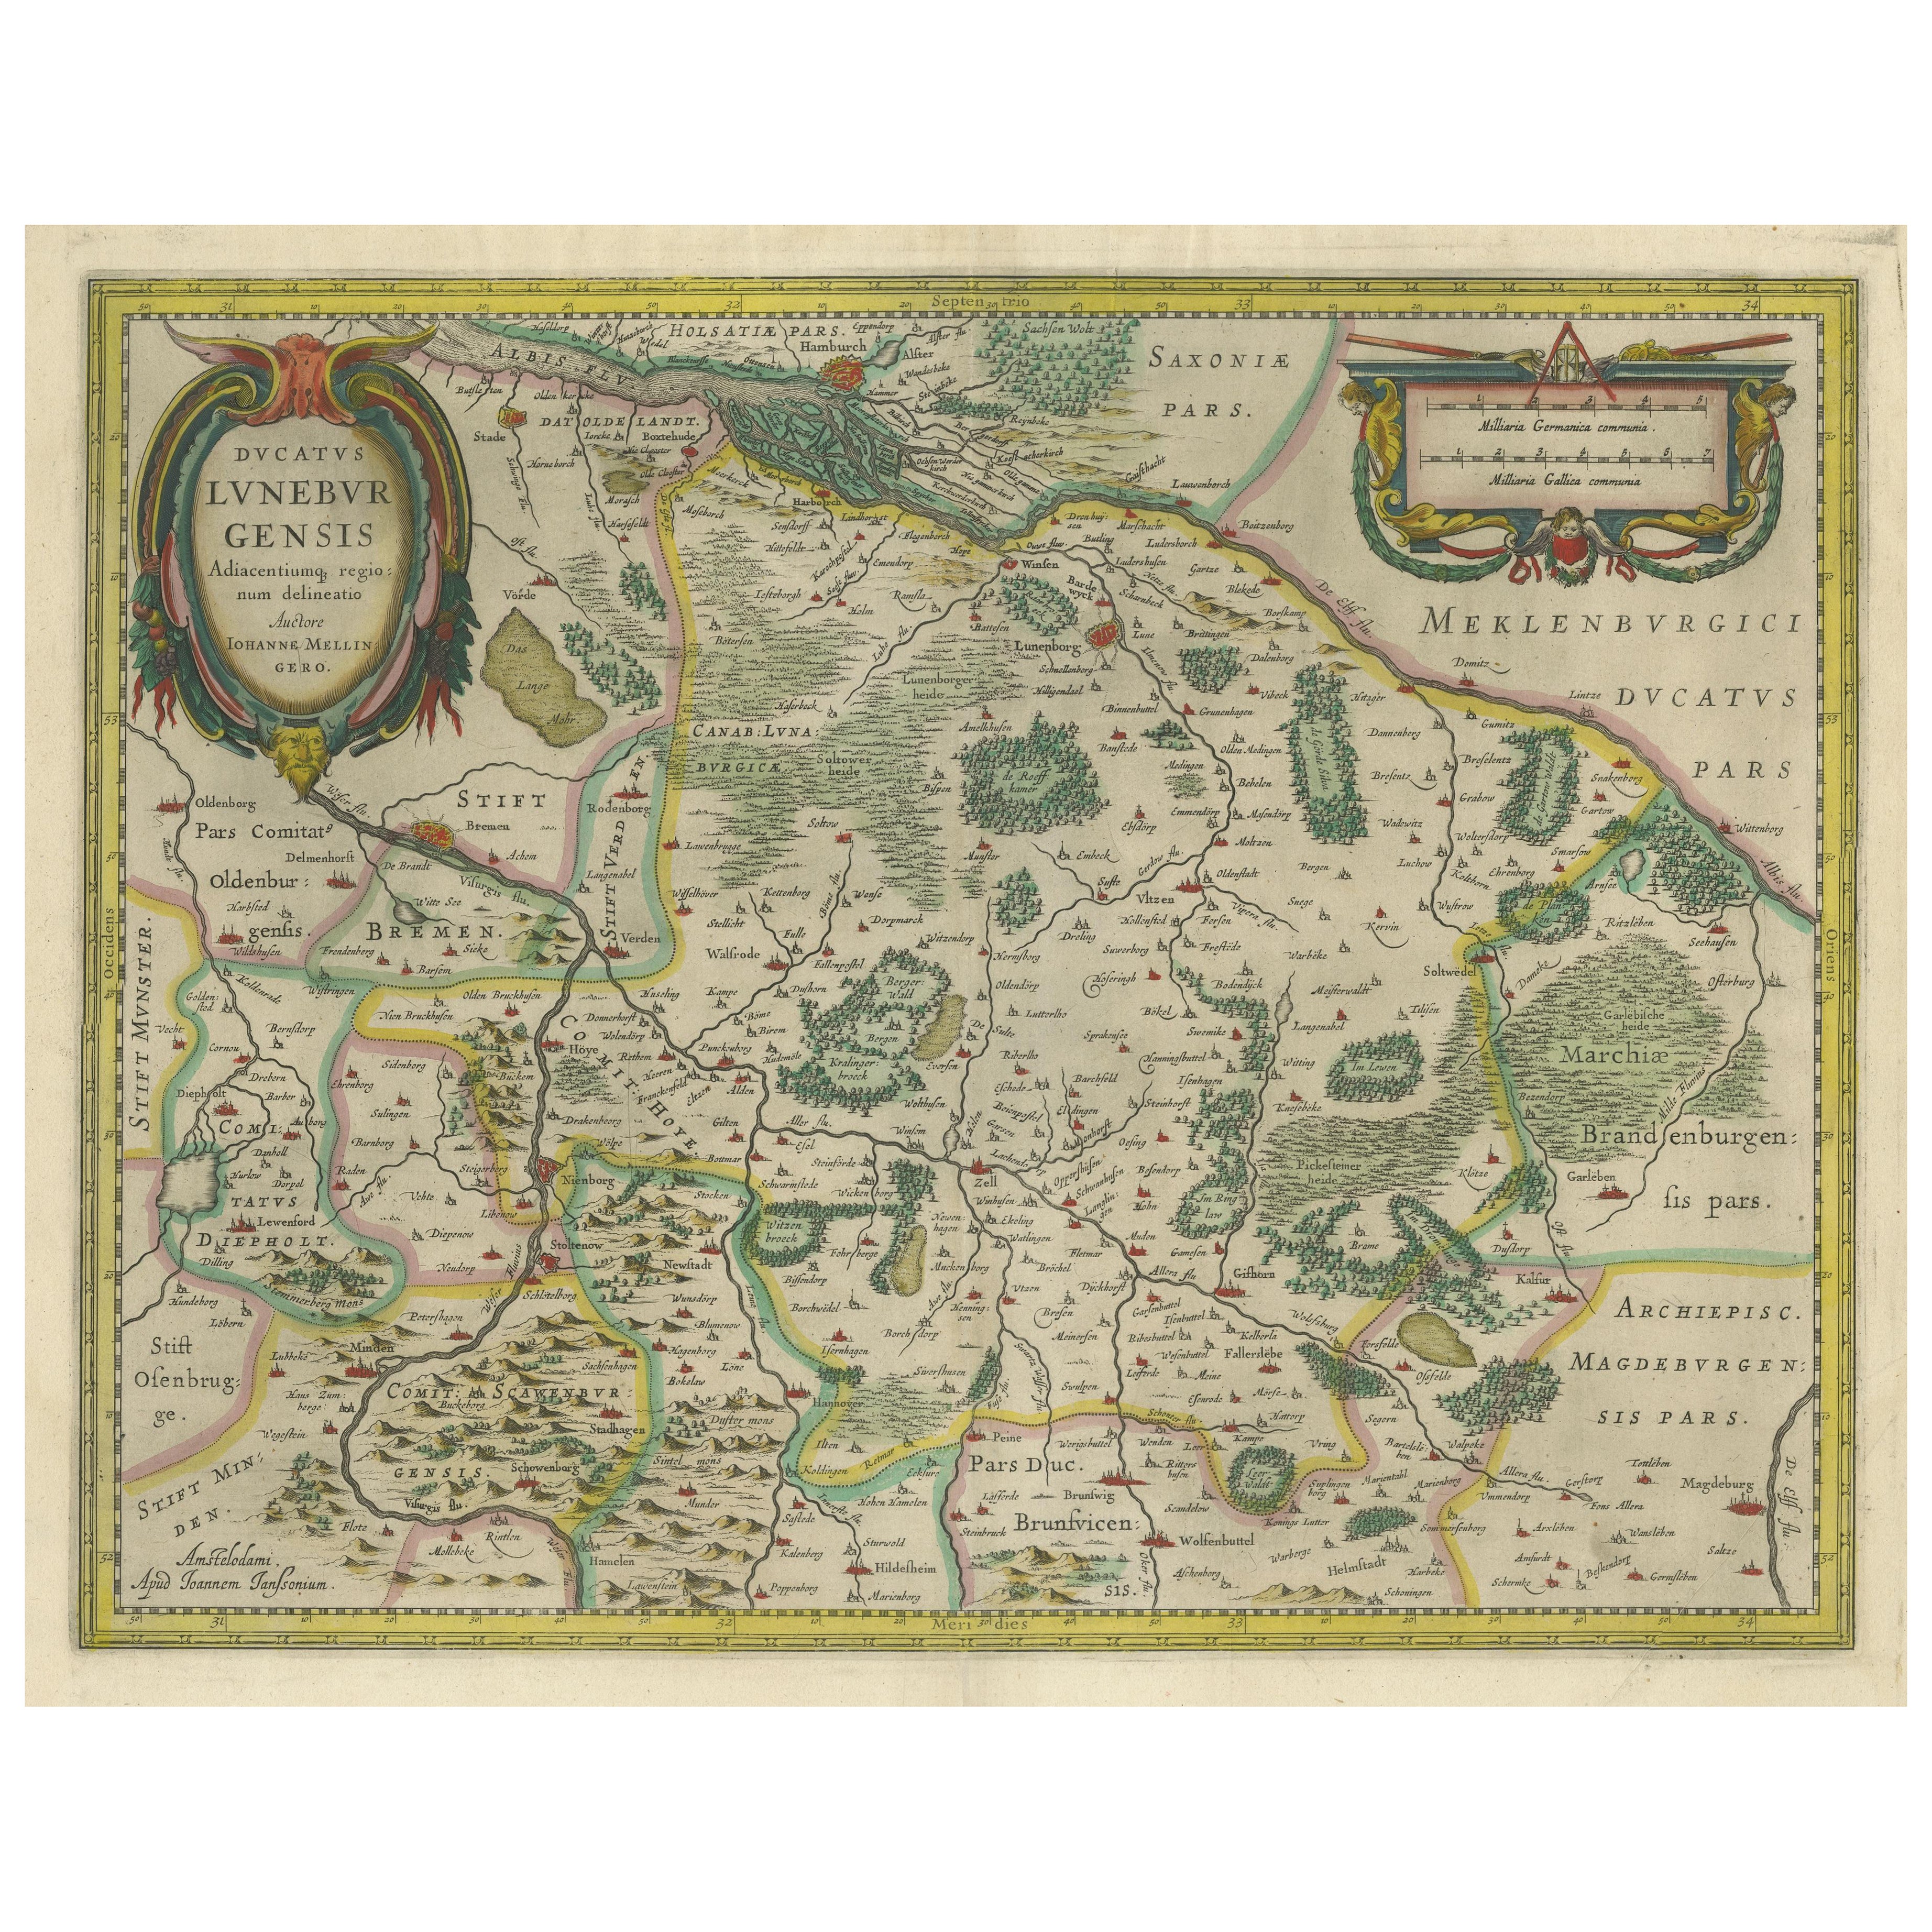 Carte ancienne du duché de Lunebourg, Basse-Saxe, Allemagne